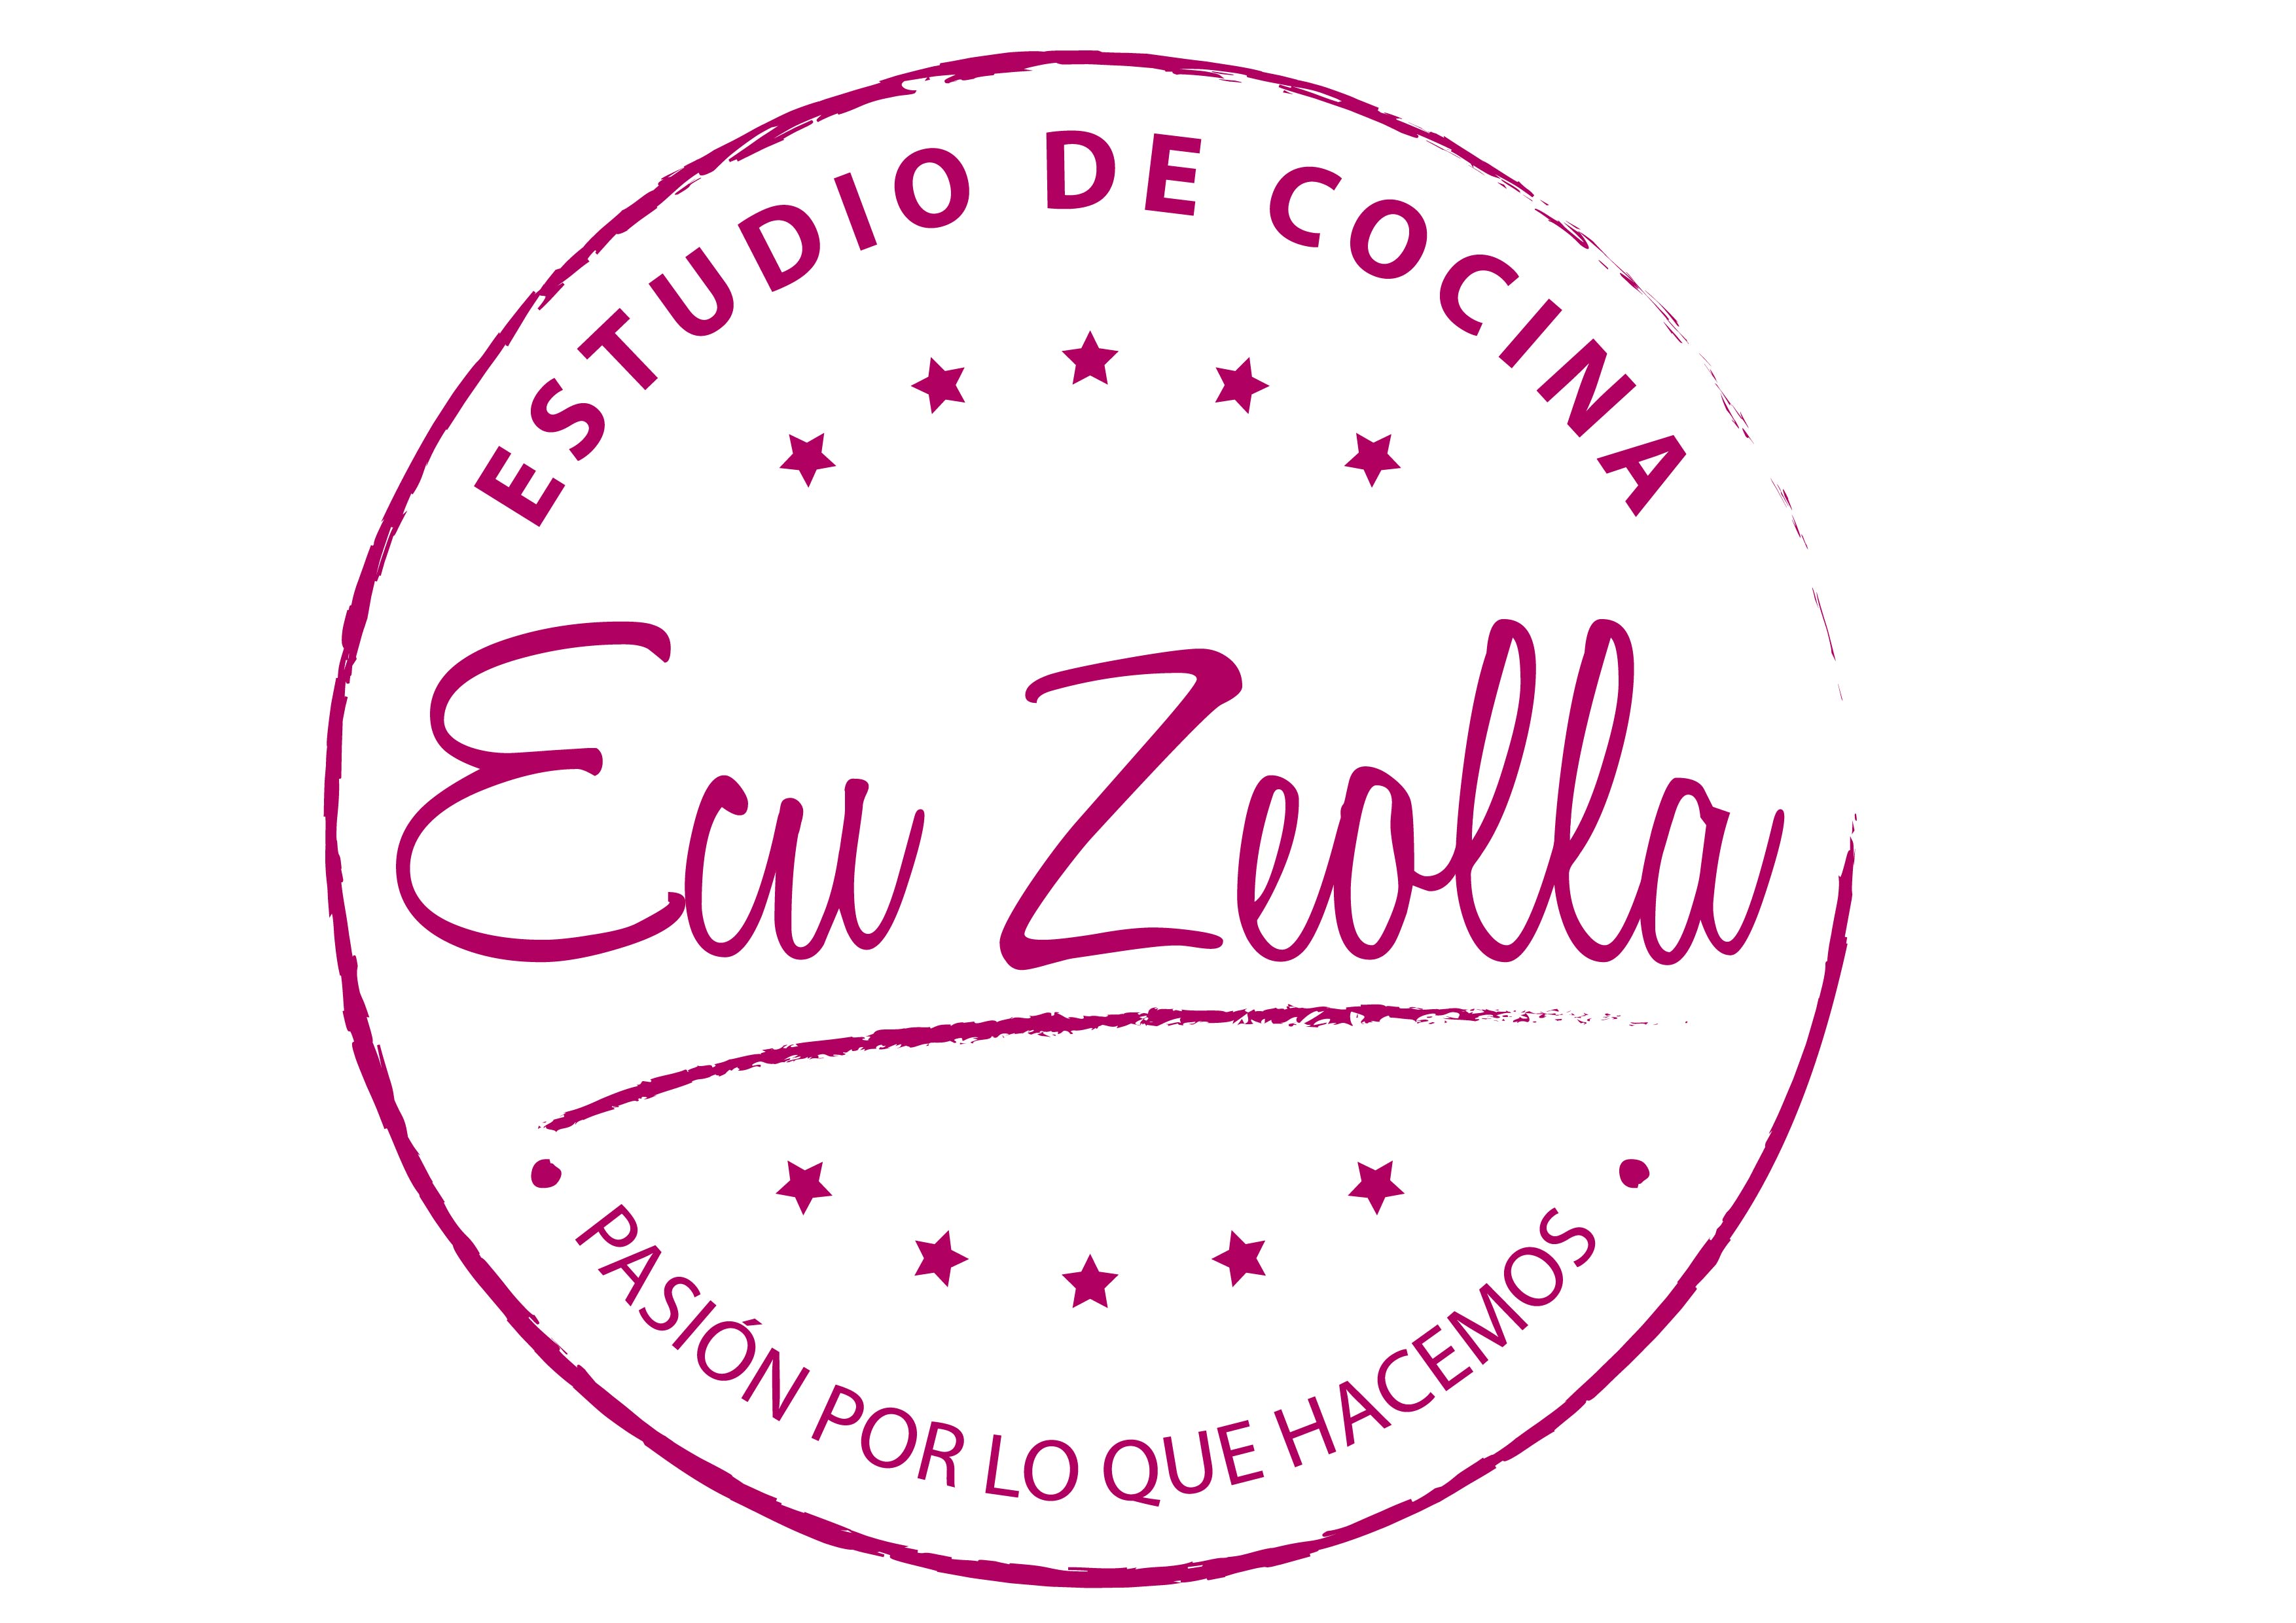 Ecu Zeolla